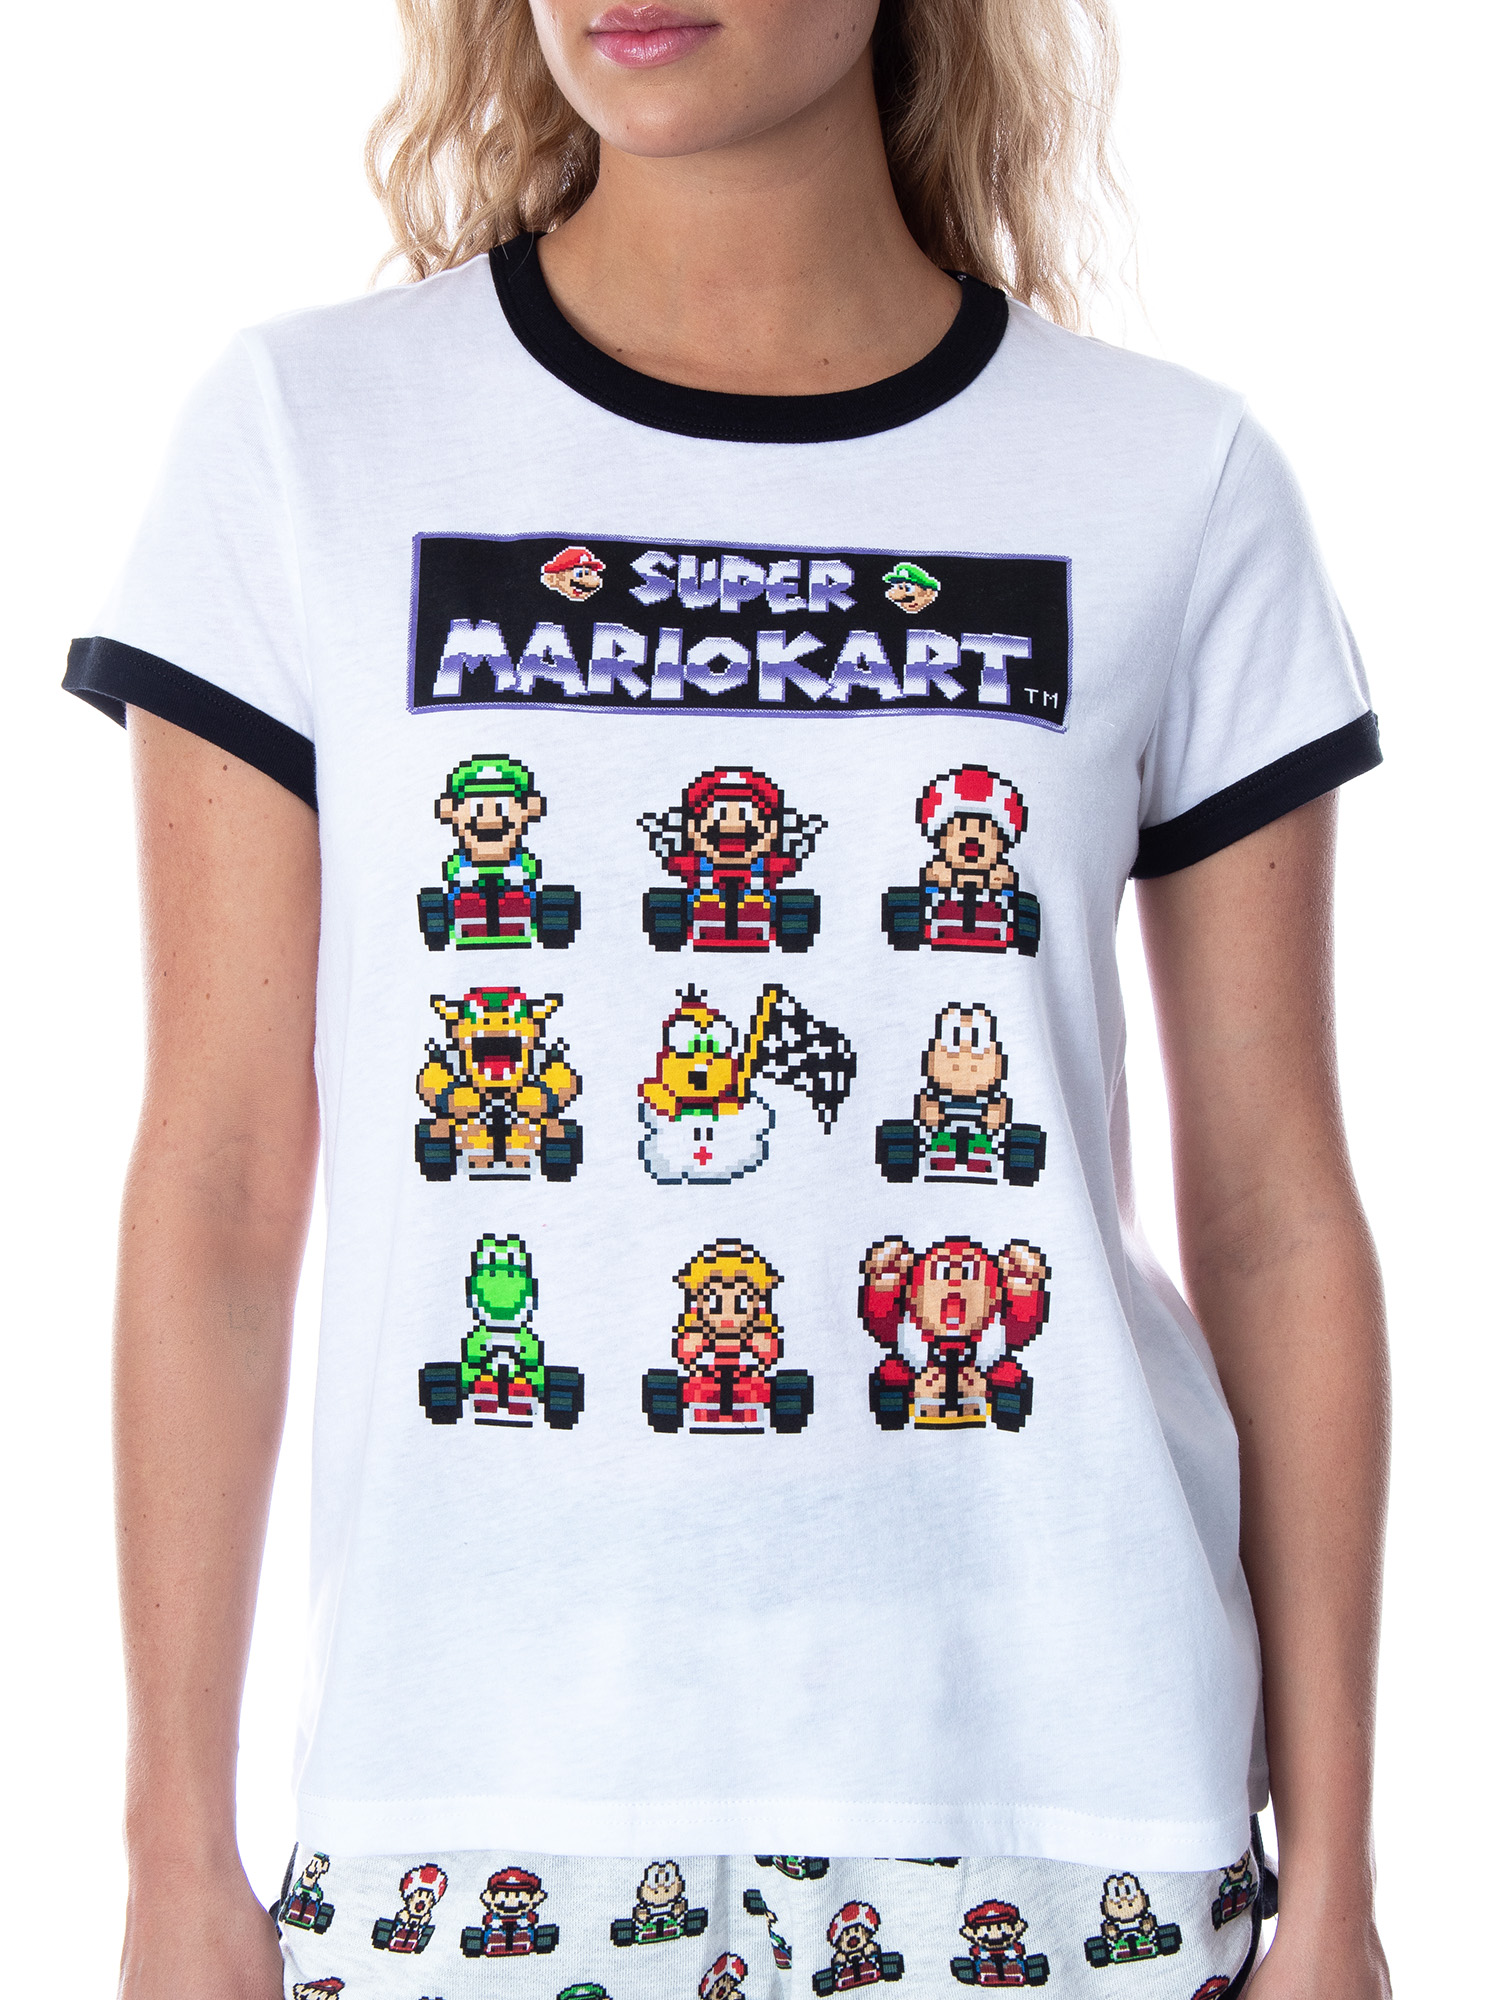 MJC Super Mario Kart Women's Video Game 3 Piece Matching Pajama Set - Boxer Shorts, Shirt, And Anti-Slip Socks